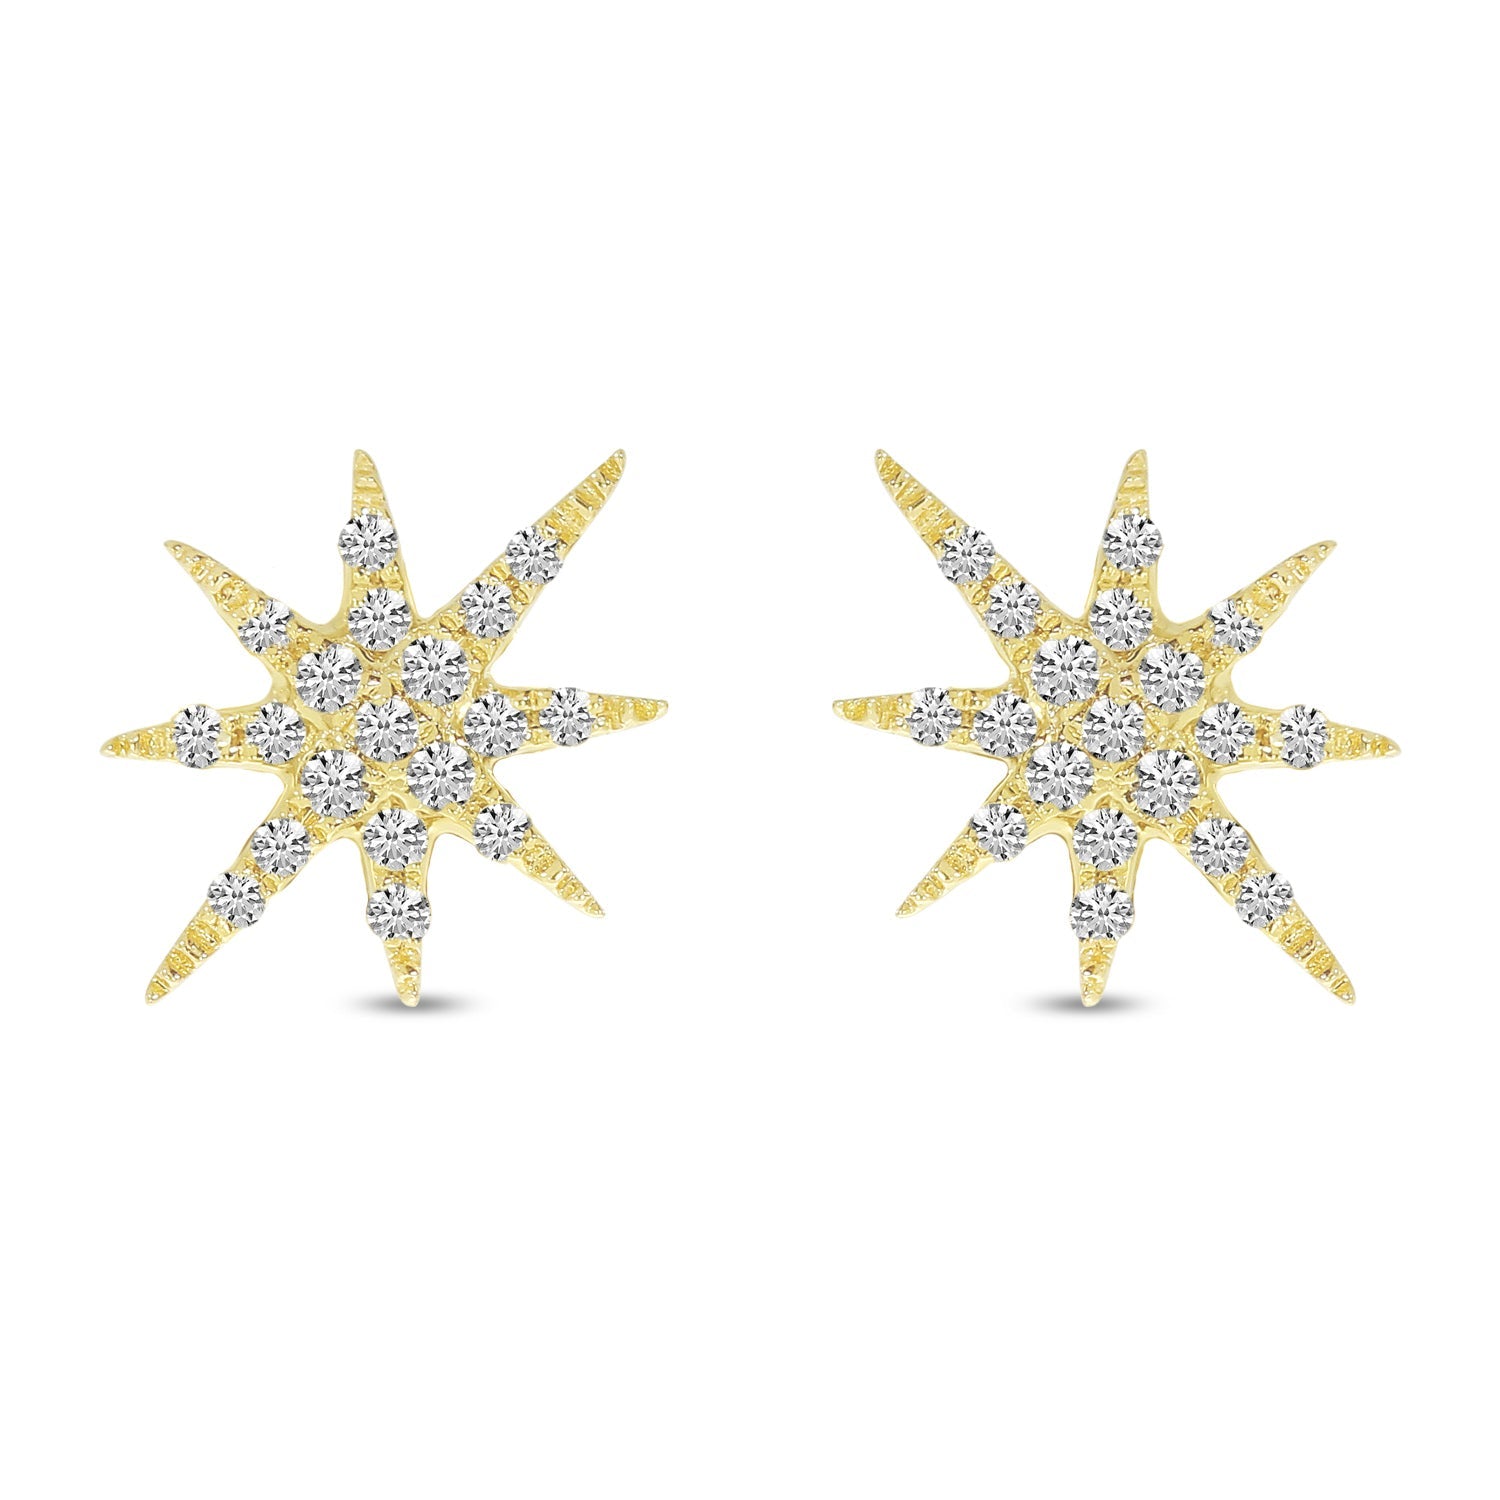 DIAMOND STARBURST EARRINGS E10412W